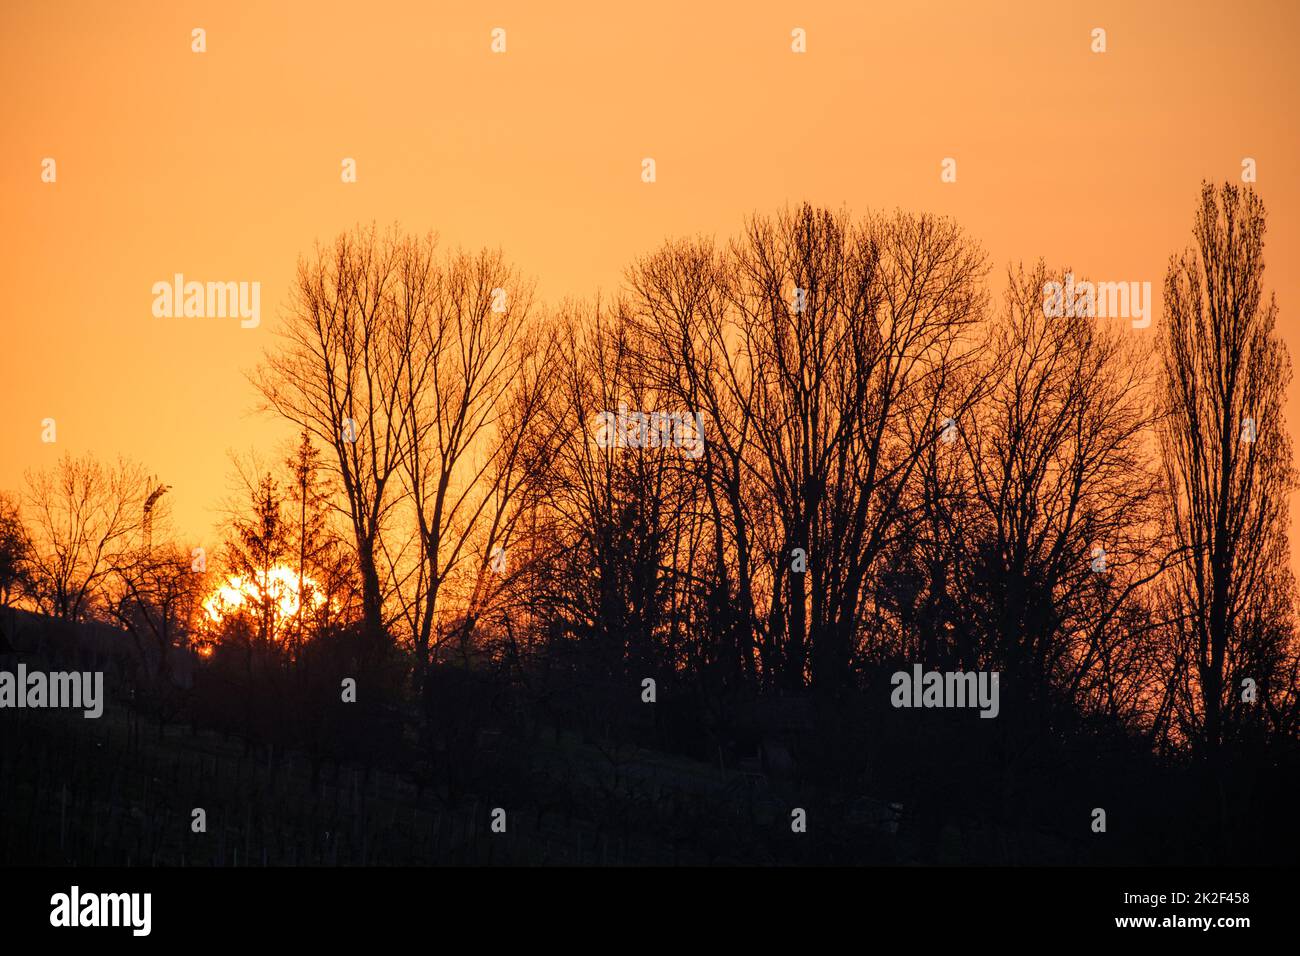 Sunrise behind bushes and trees landscape Stock Photo